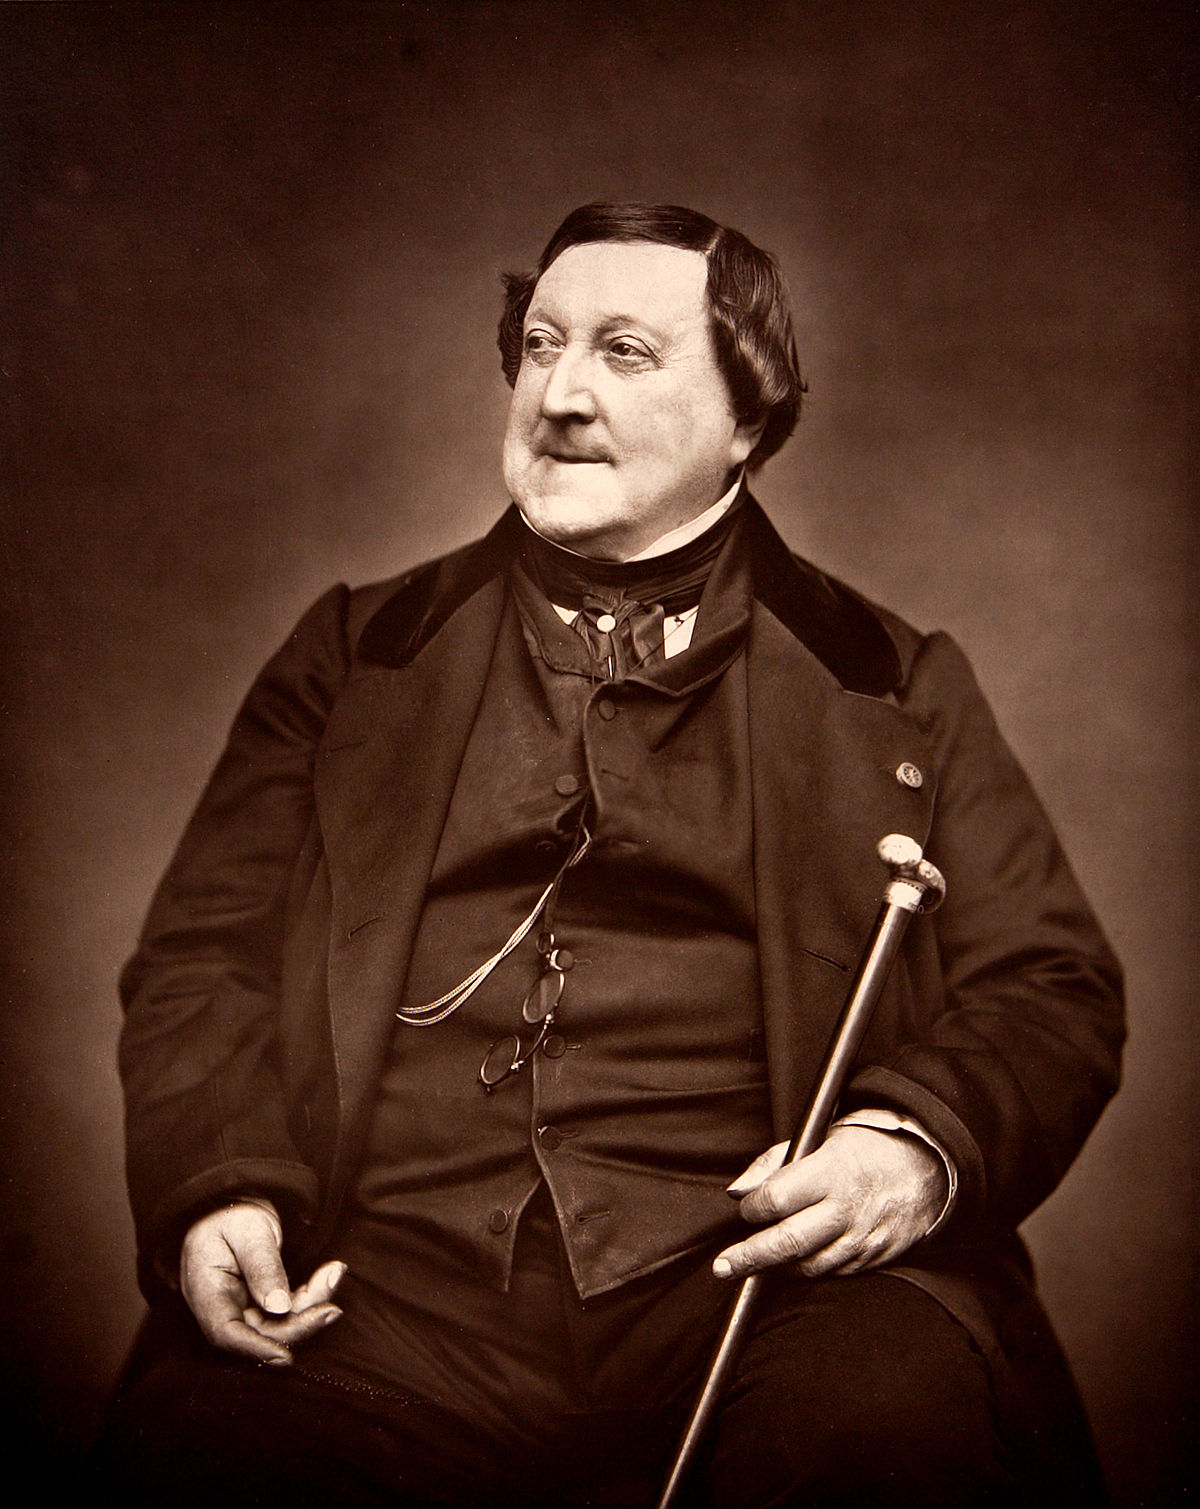  Biografi om Gioachino Rossini